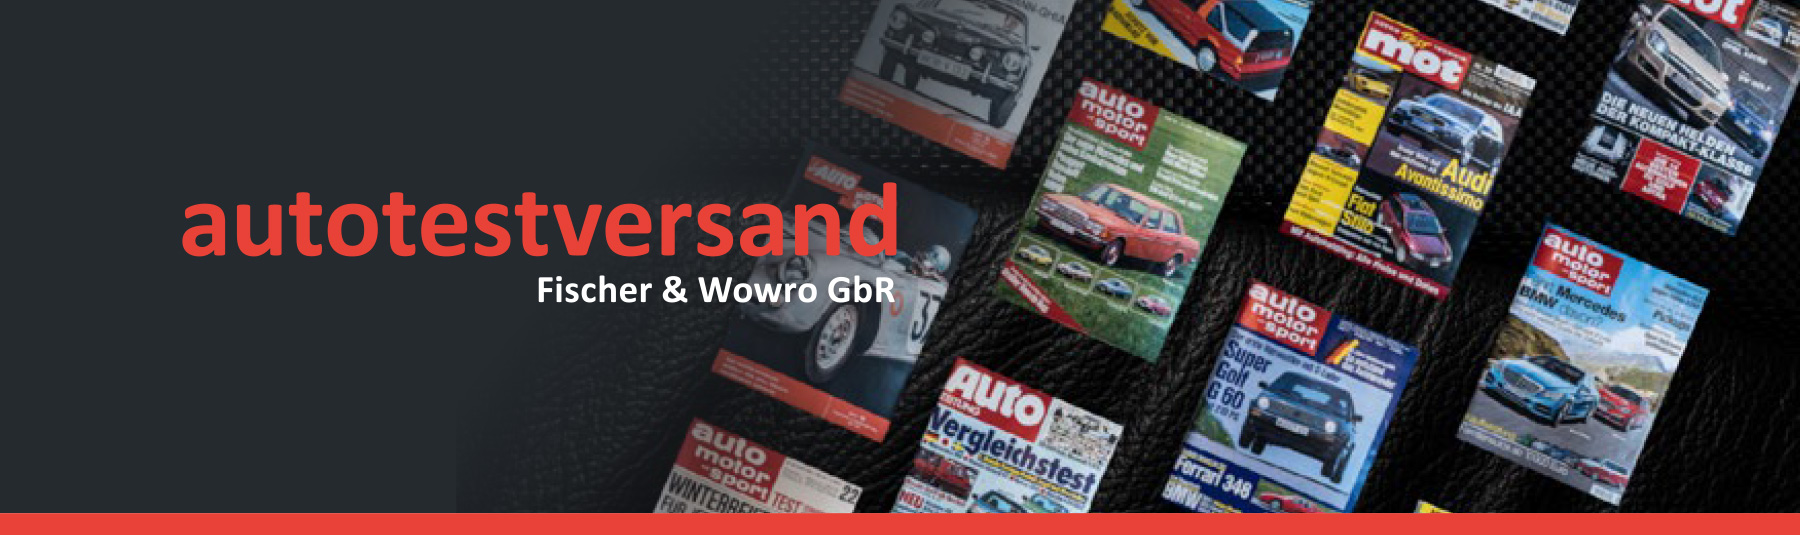 Autotestversand - Fischer & Wowro GbR